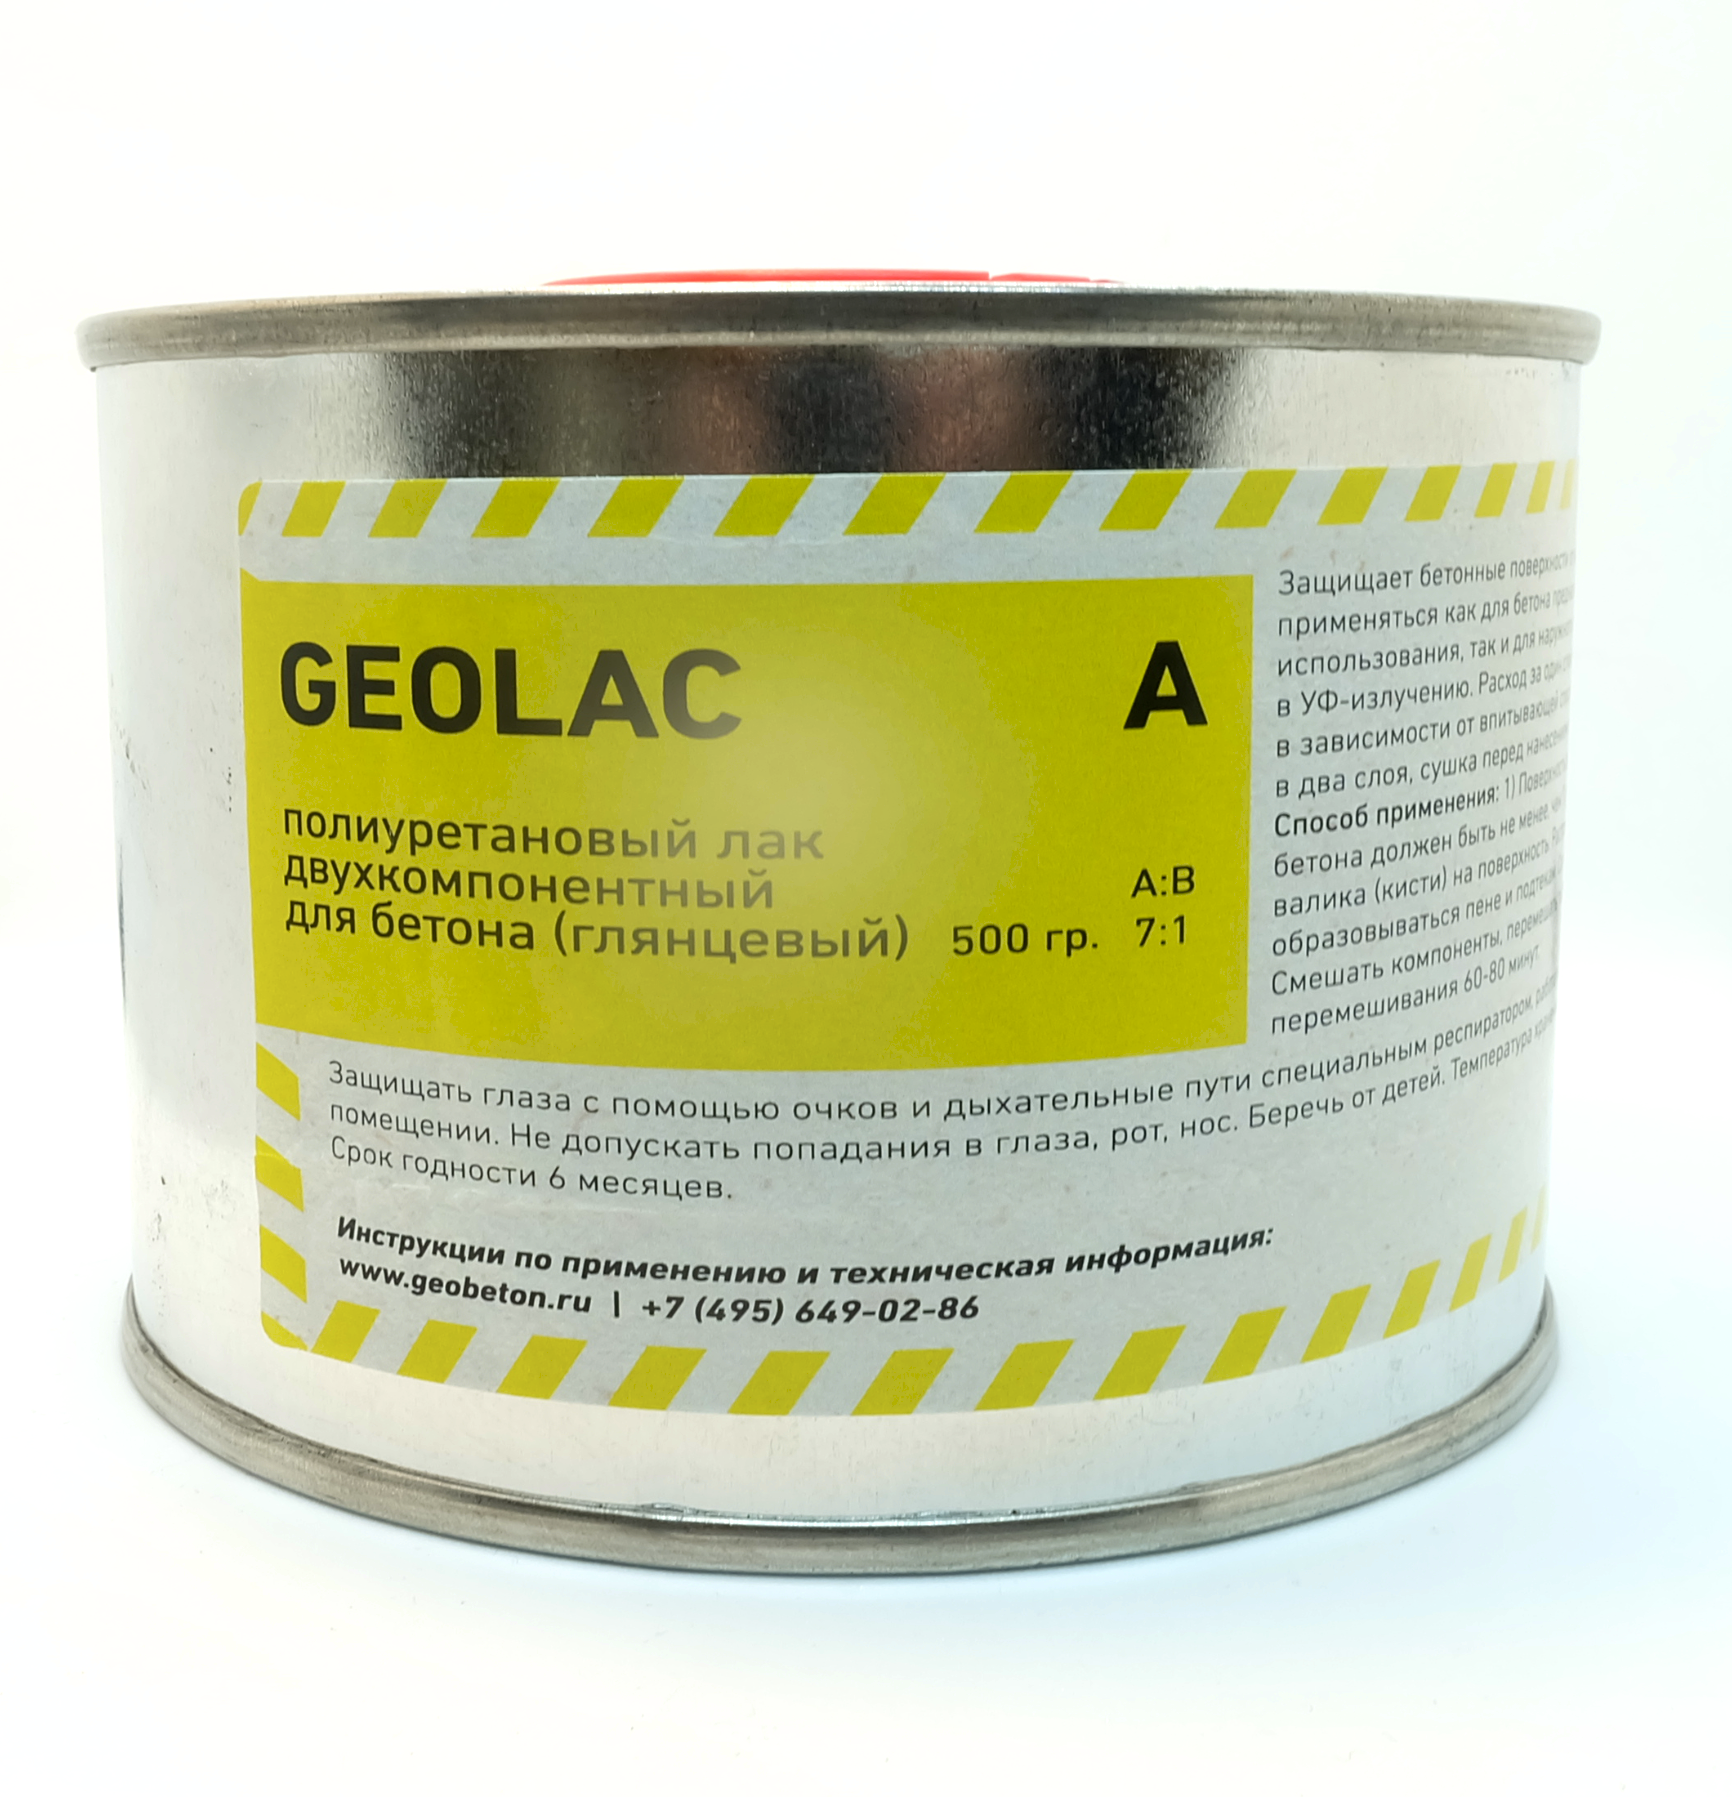 Полиуретановый двухкомпонентный защитный лак GEOLAC (глянцевый) для бетона - 500 г. - фотография № 1